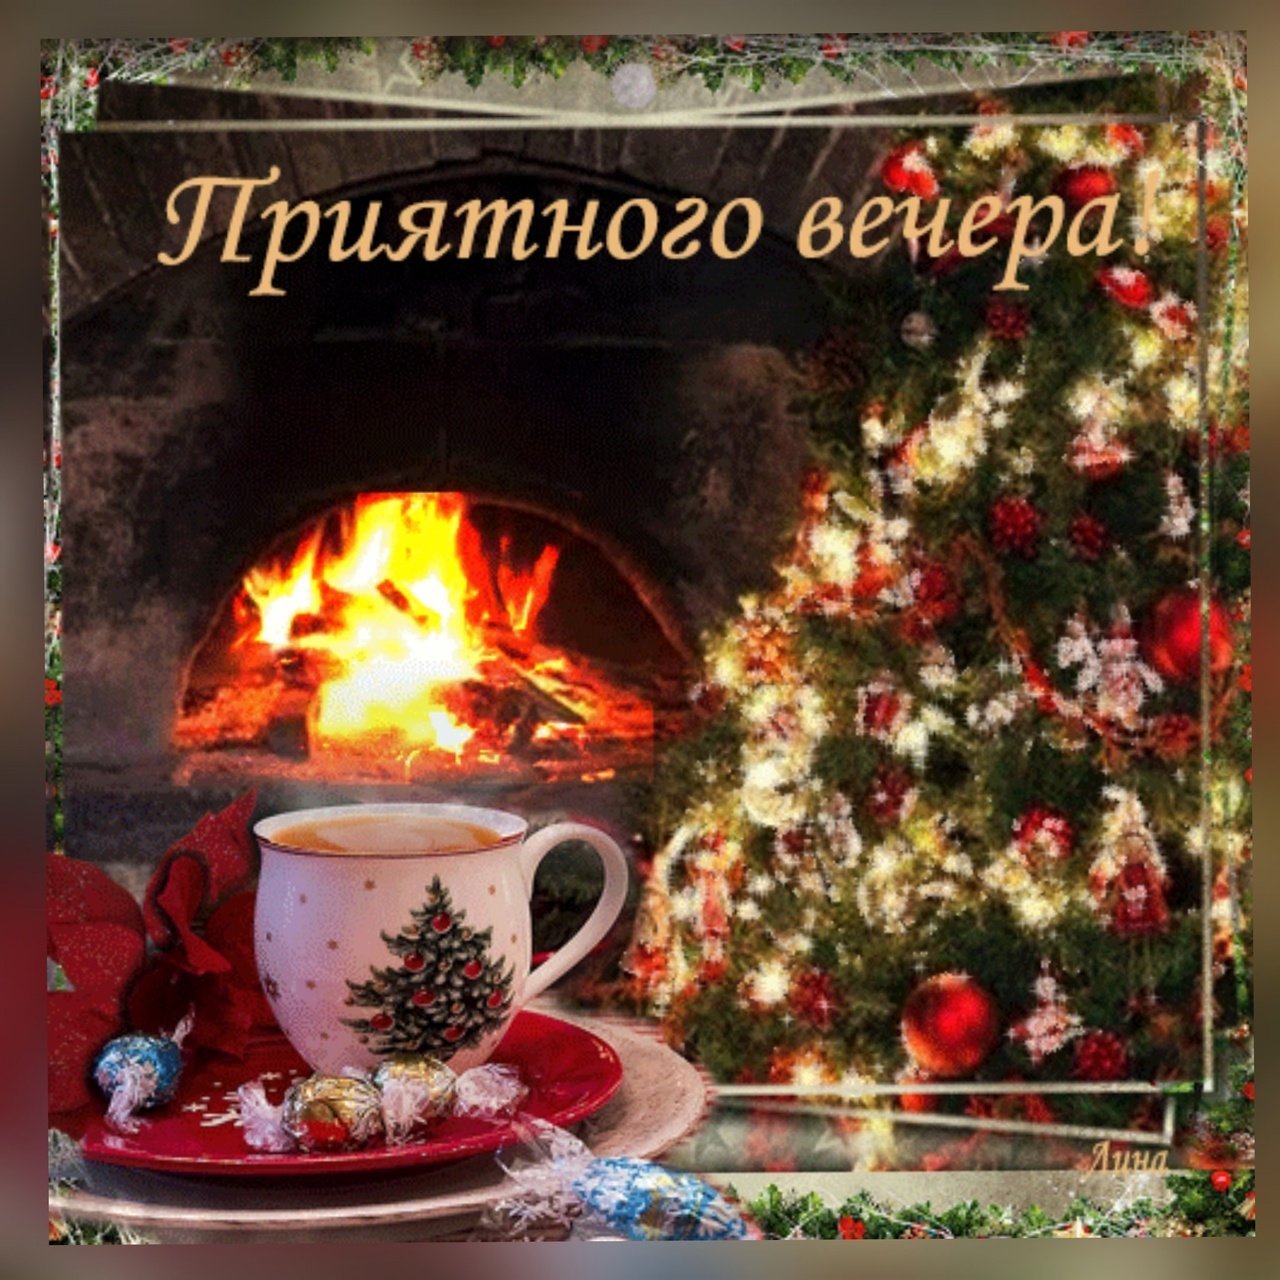 Хорошего вечера зимние. Тёплого уютного зимнего вечера. Уютного вечера. Доброго зимнего вечера. Доброго новогоднего вечера и хорошего настроения.